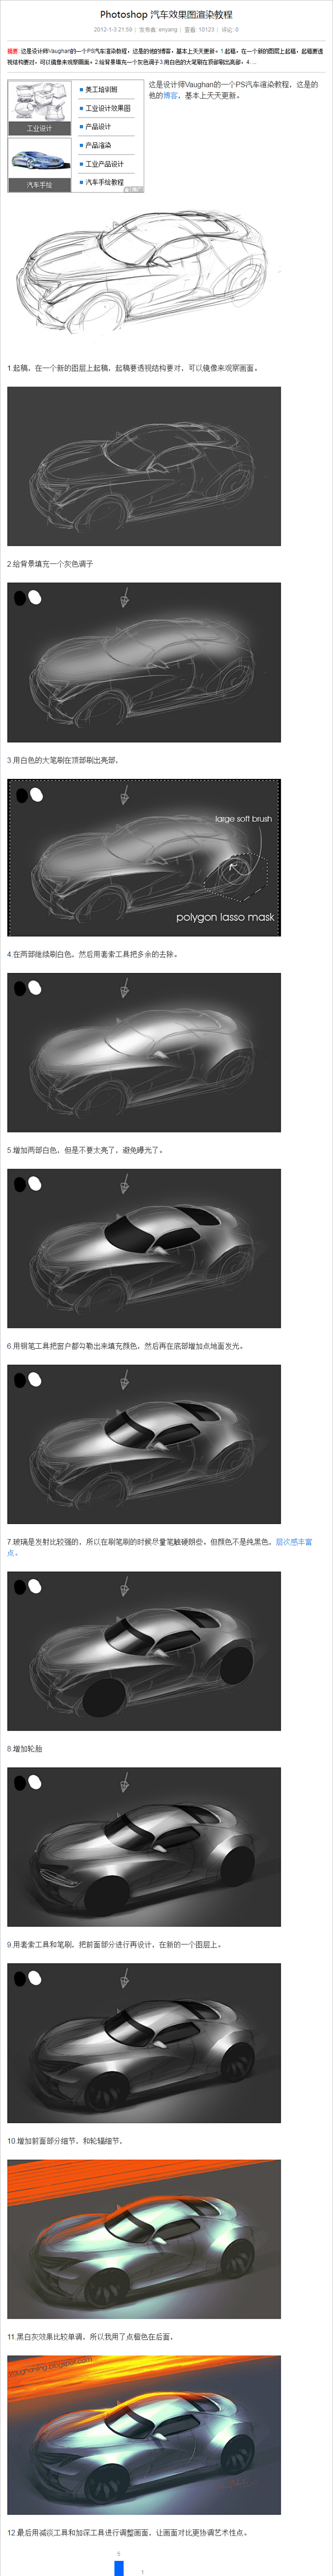 Photoshop 汽车效果图渲染教程-...